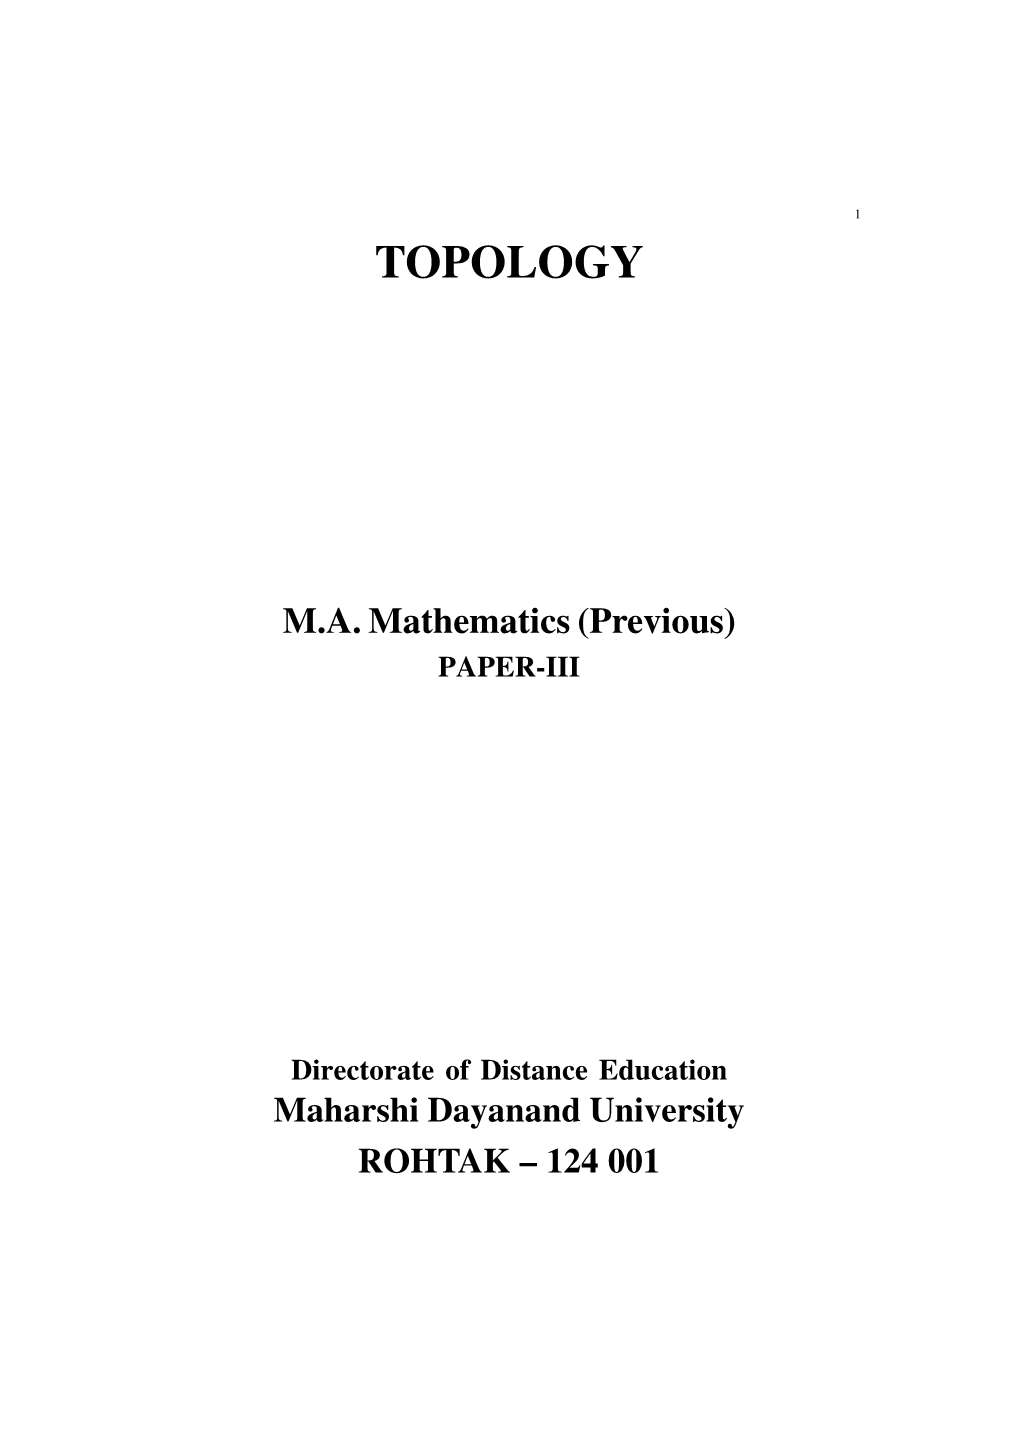 Topology-Final.Pdf